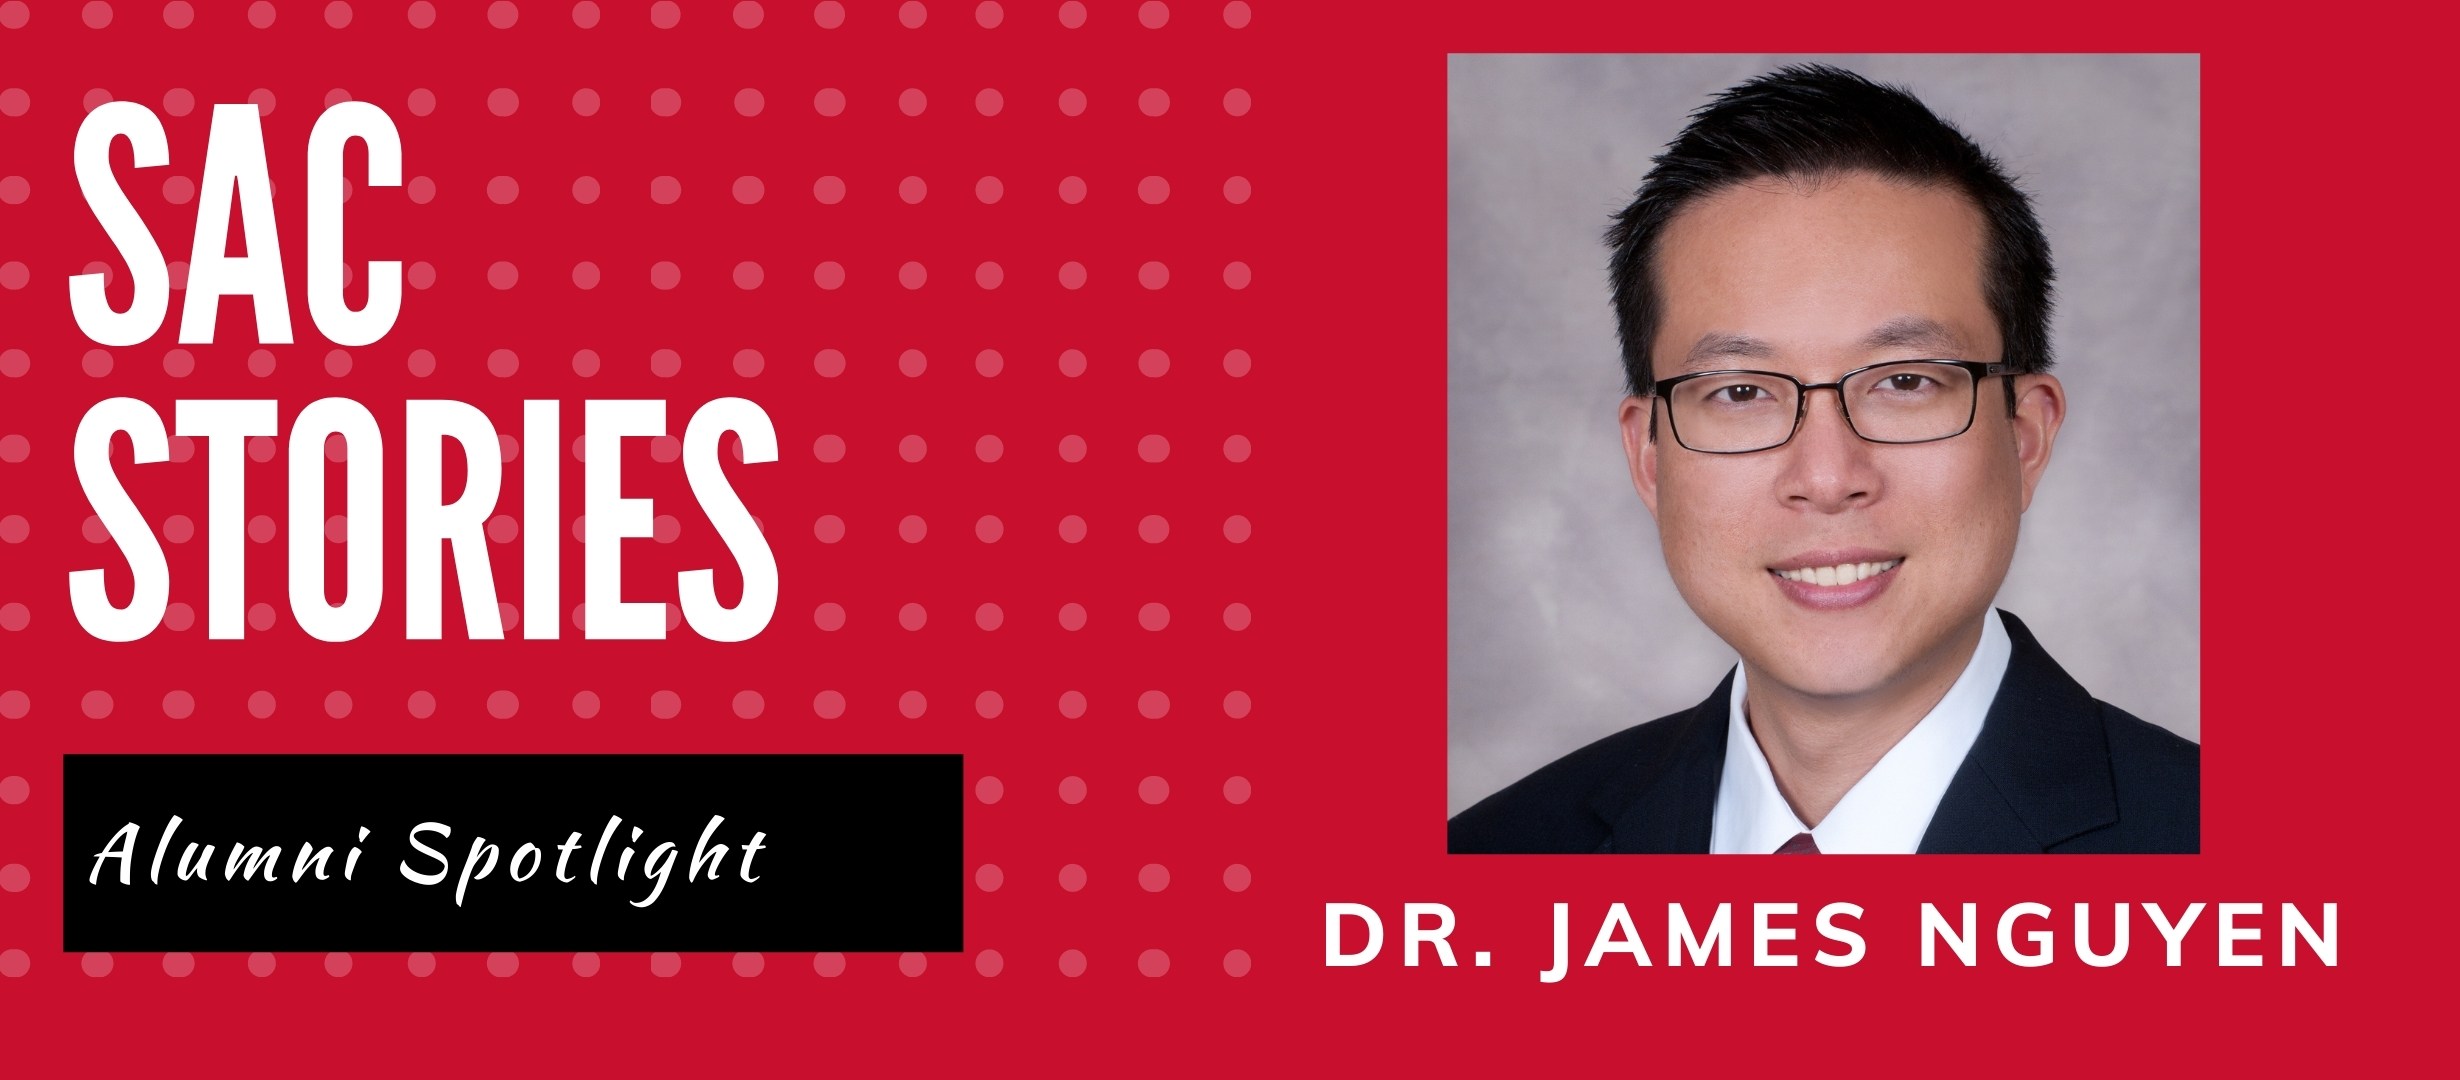 Dr. James Nguyen